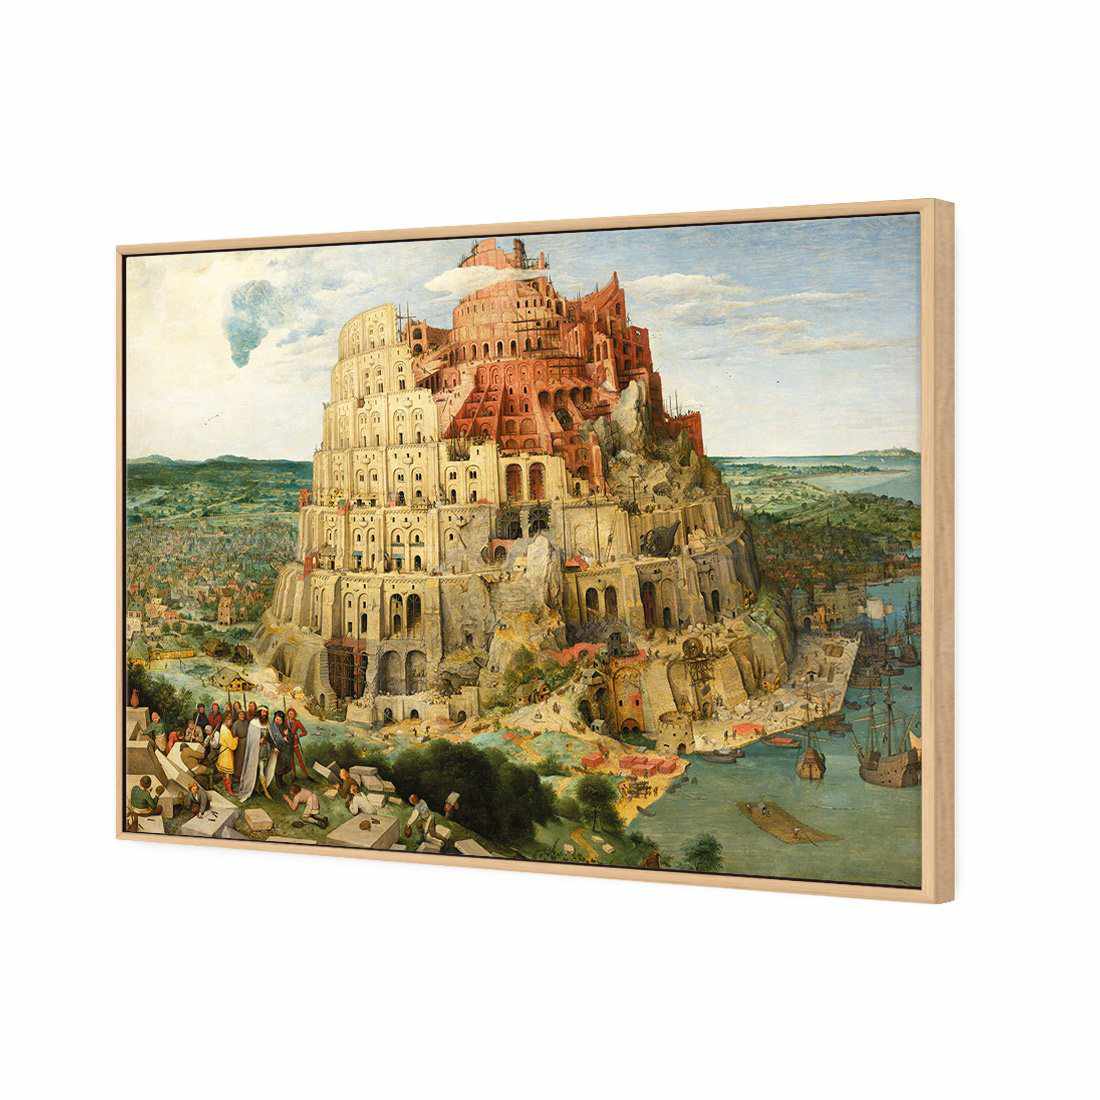 Tower Of Babel - Pieter Bruegel The Elder Canvas Art-Canvas-Wall Art Designs-45x30cm-Canvas - Oak Frame-Wall Art Designs